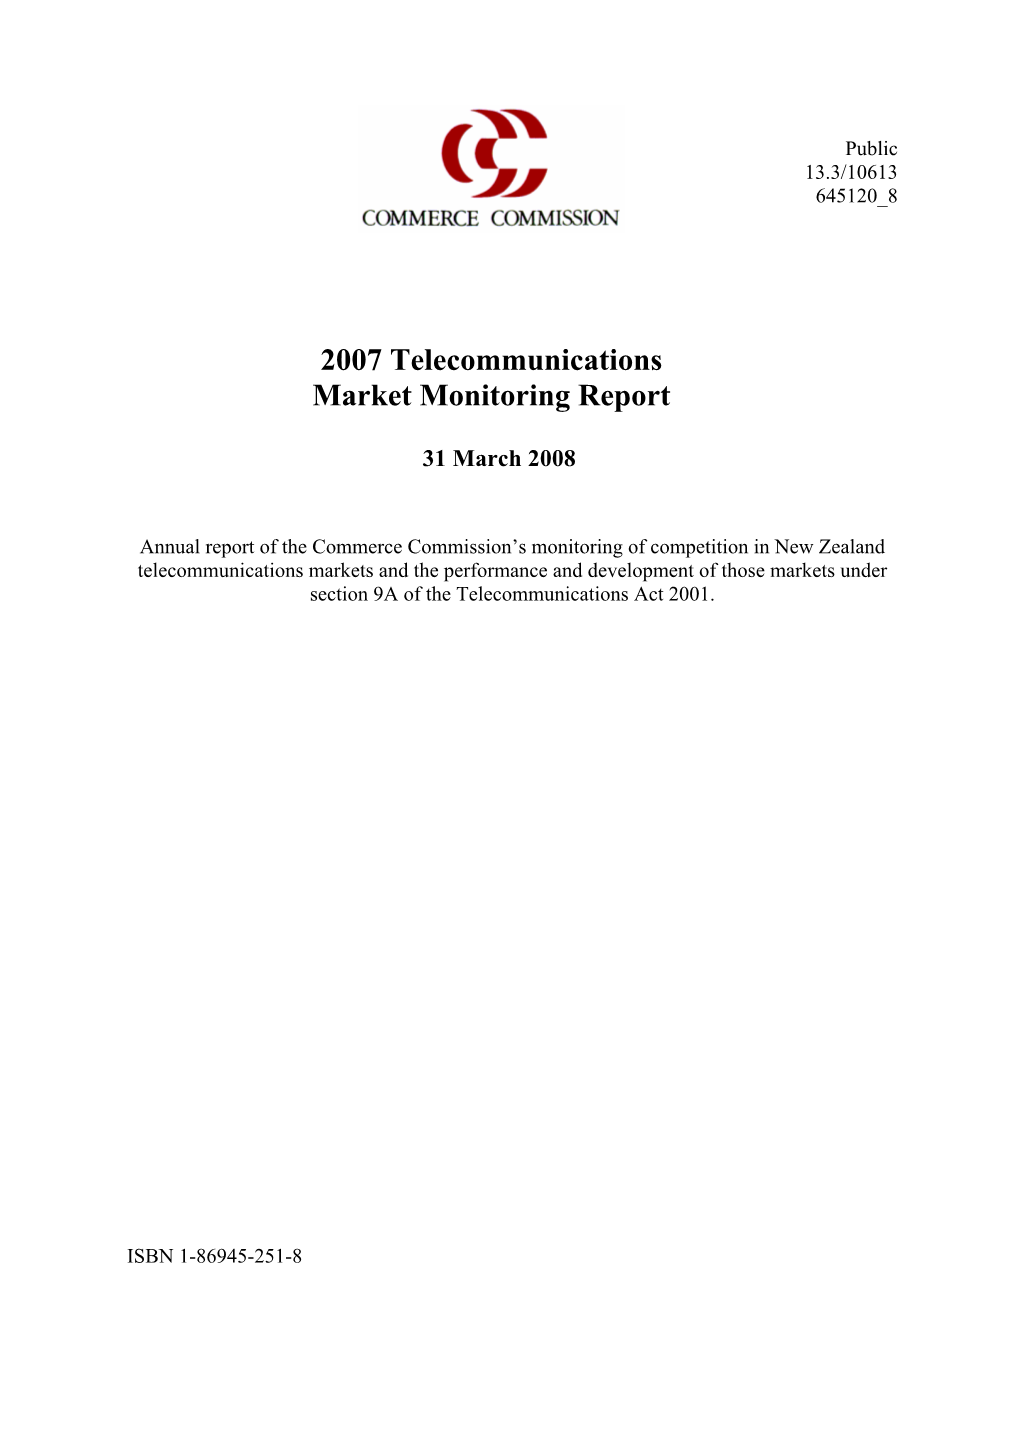 2007 Telecommunications Market Monitoring Report